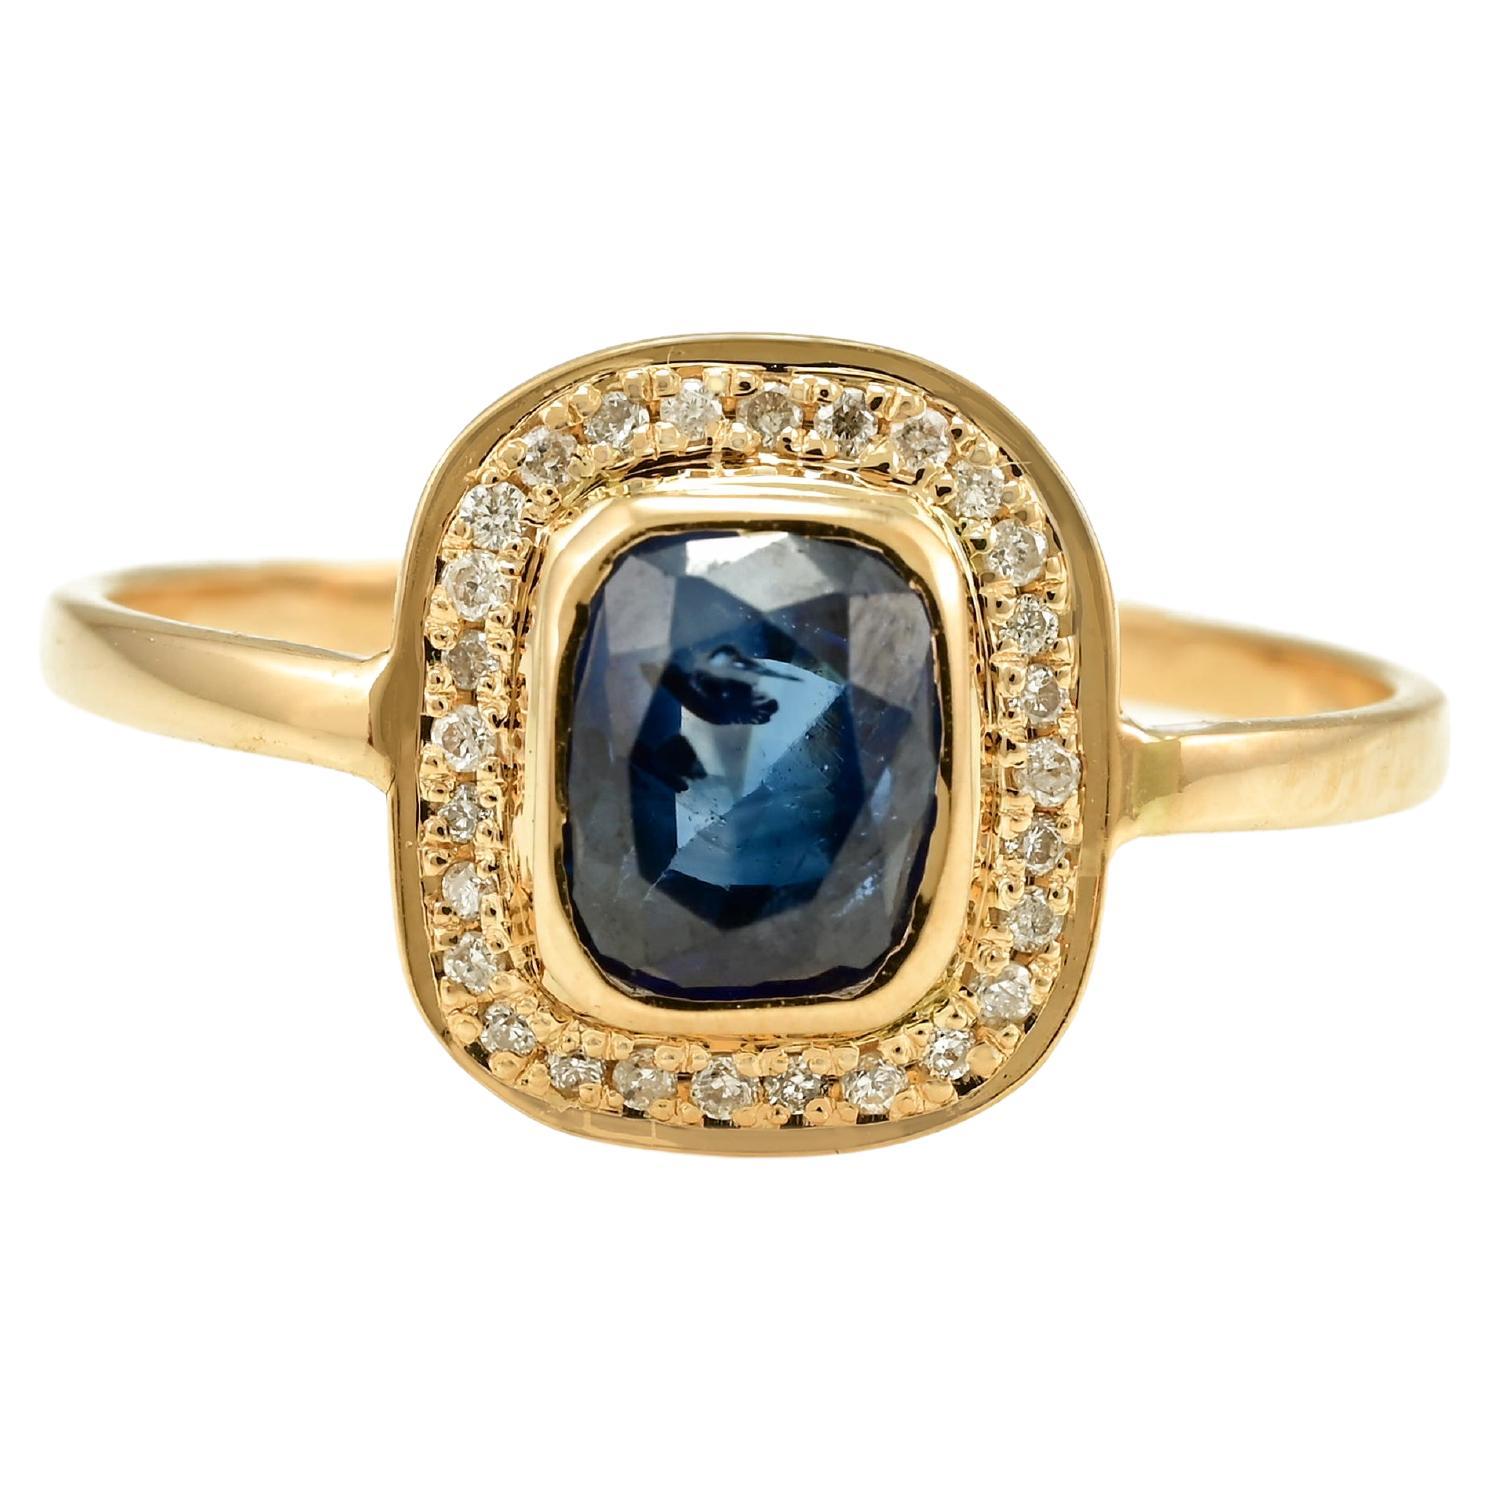 Bague vintage en or jaune massif 18 carats avec saphir bleu vif profond et halo de diamants